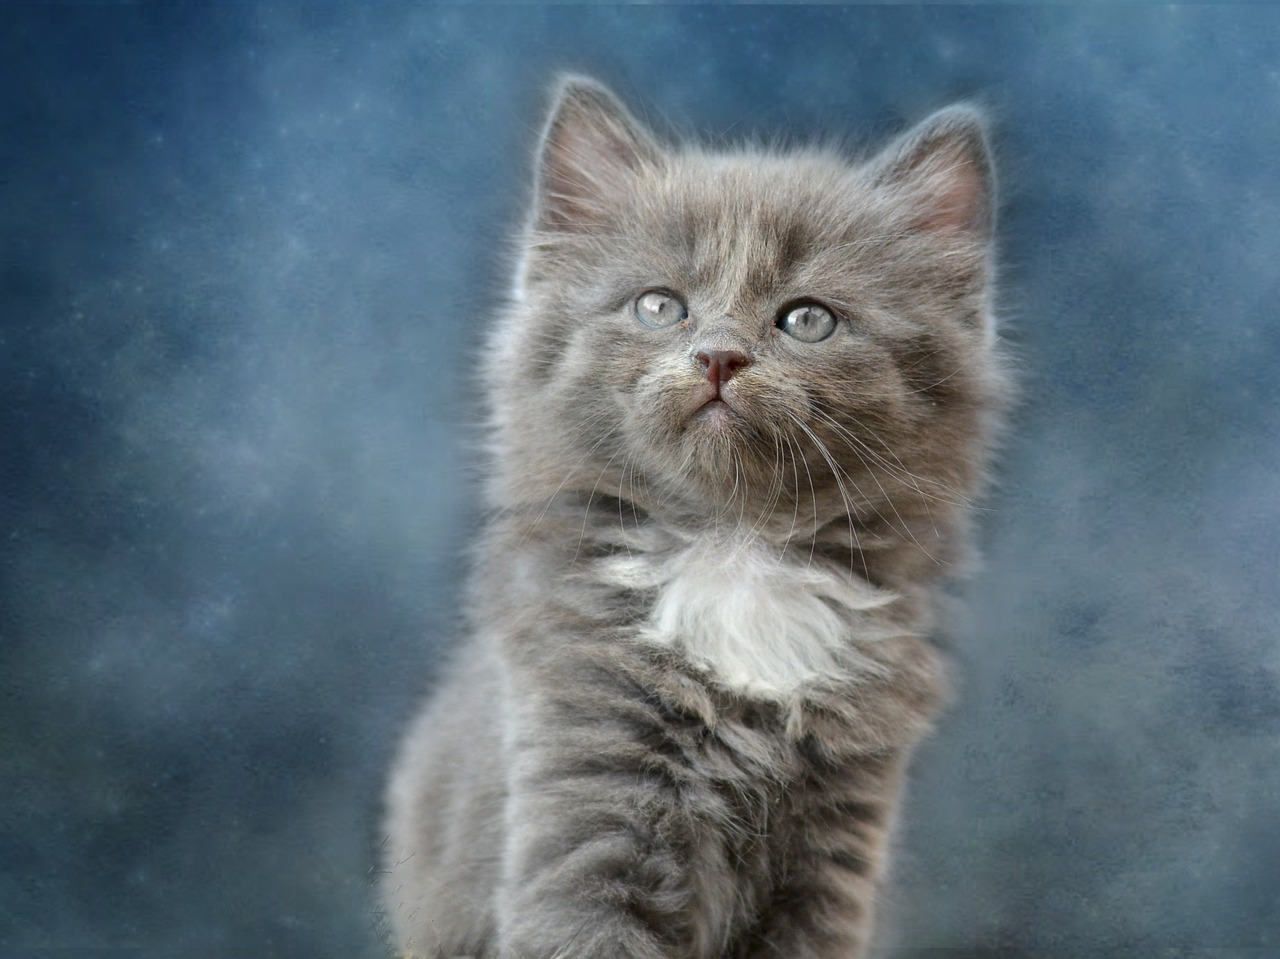  Gambar Kucing Comel dan Manja Anak Kucing Lucu dan Paling 